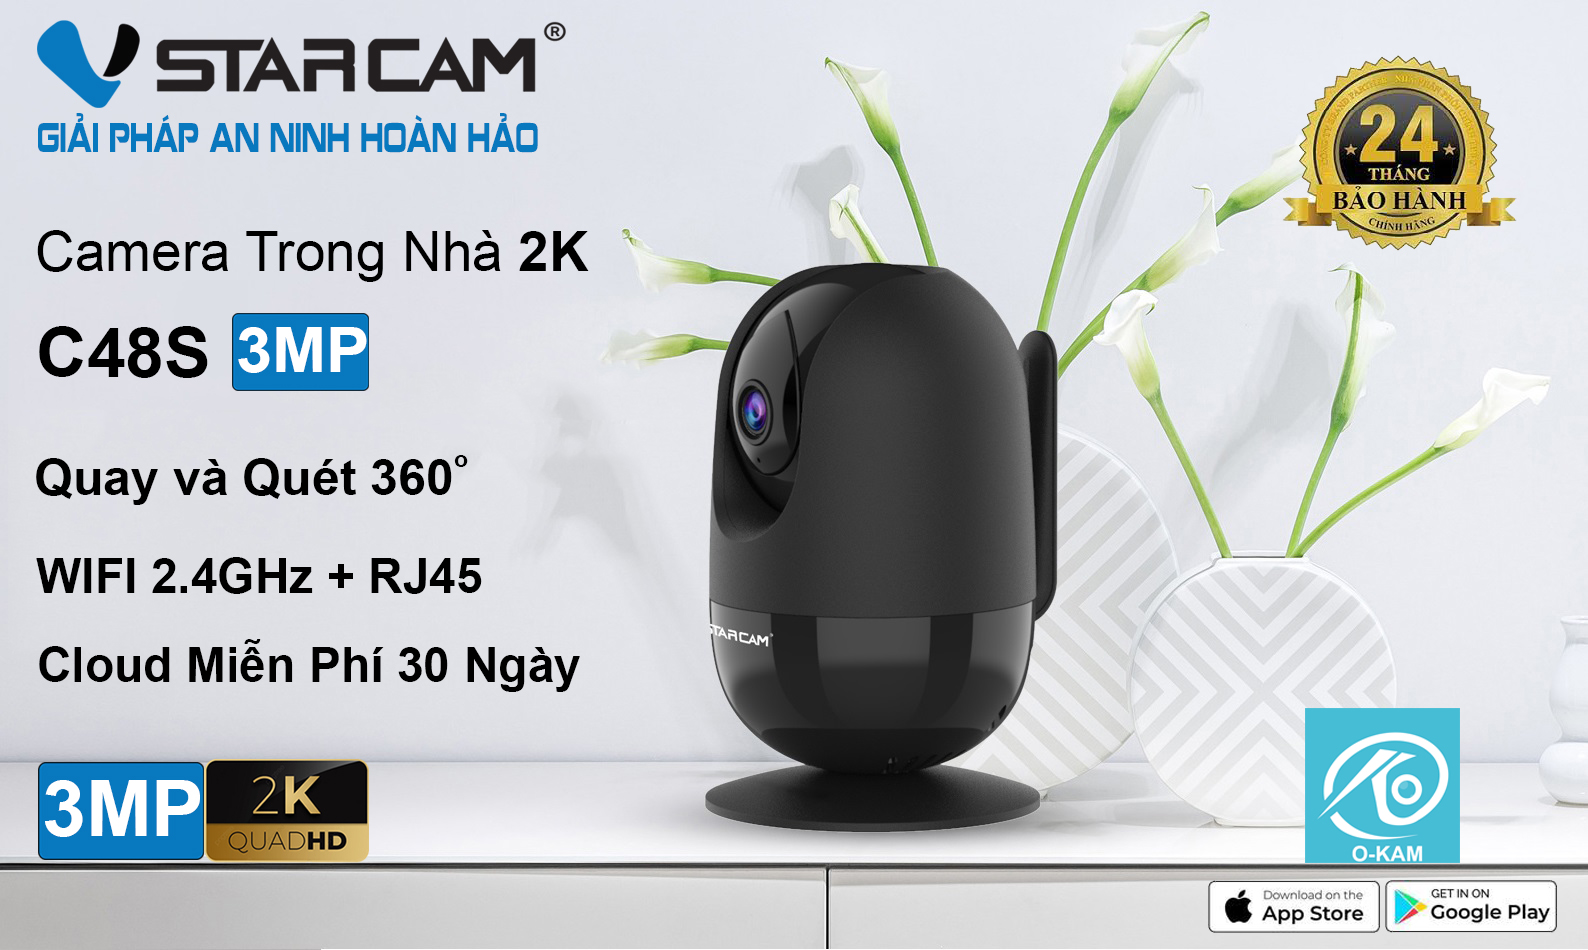 Camera IP Wifi STARCAM C48S 3MP Robo Chính hãng (Đàm thoại 2 chiều, Hồng ngoại 10m, Có LAN, Kèm nguồn 5V)